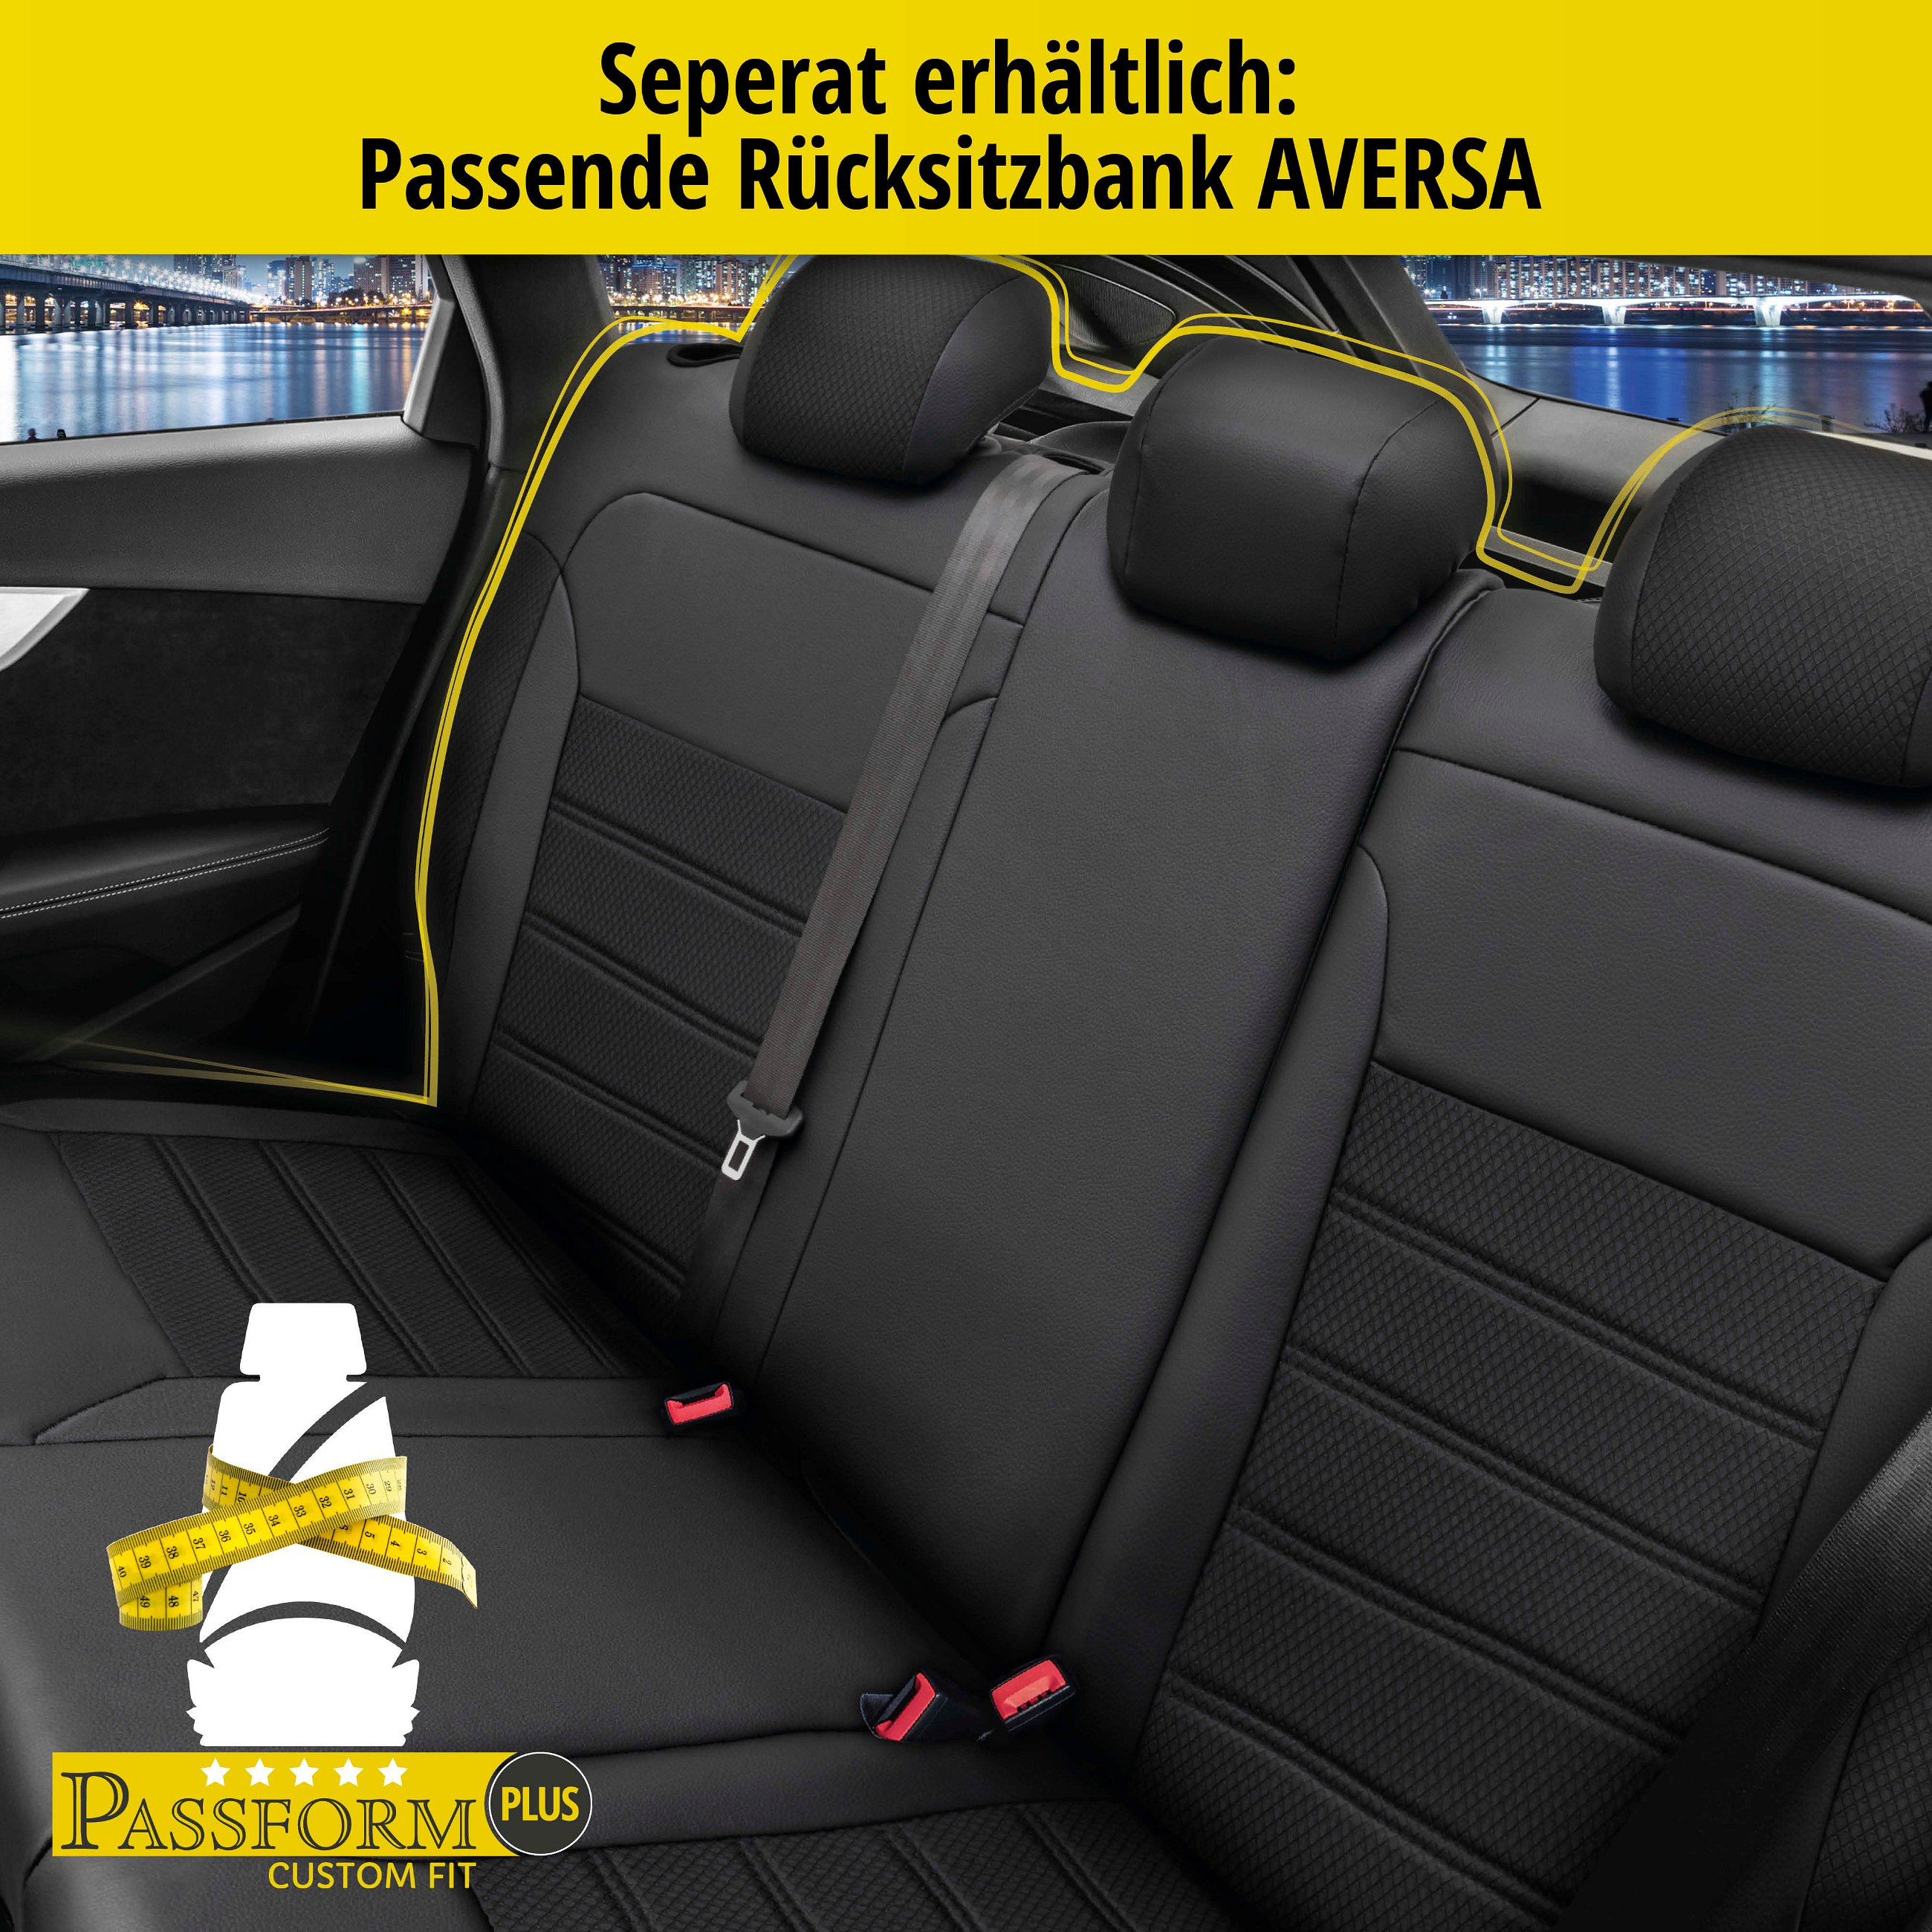 Passform Sitzbezug Aversa für VW Golf 7 Comfortline 08/2012-03/2021, 2 Einzelsitzbezüge für Sportsitze